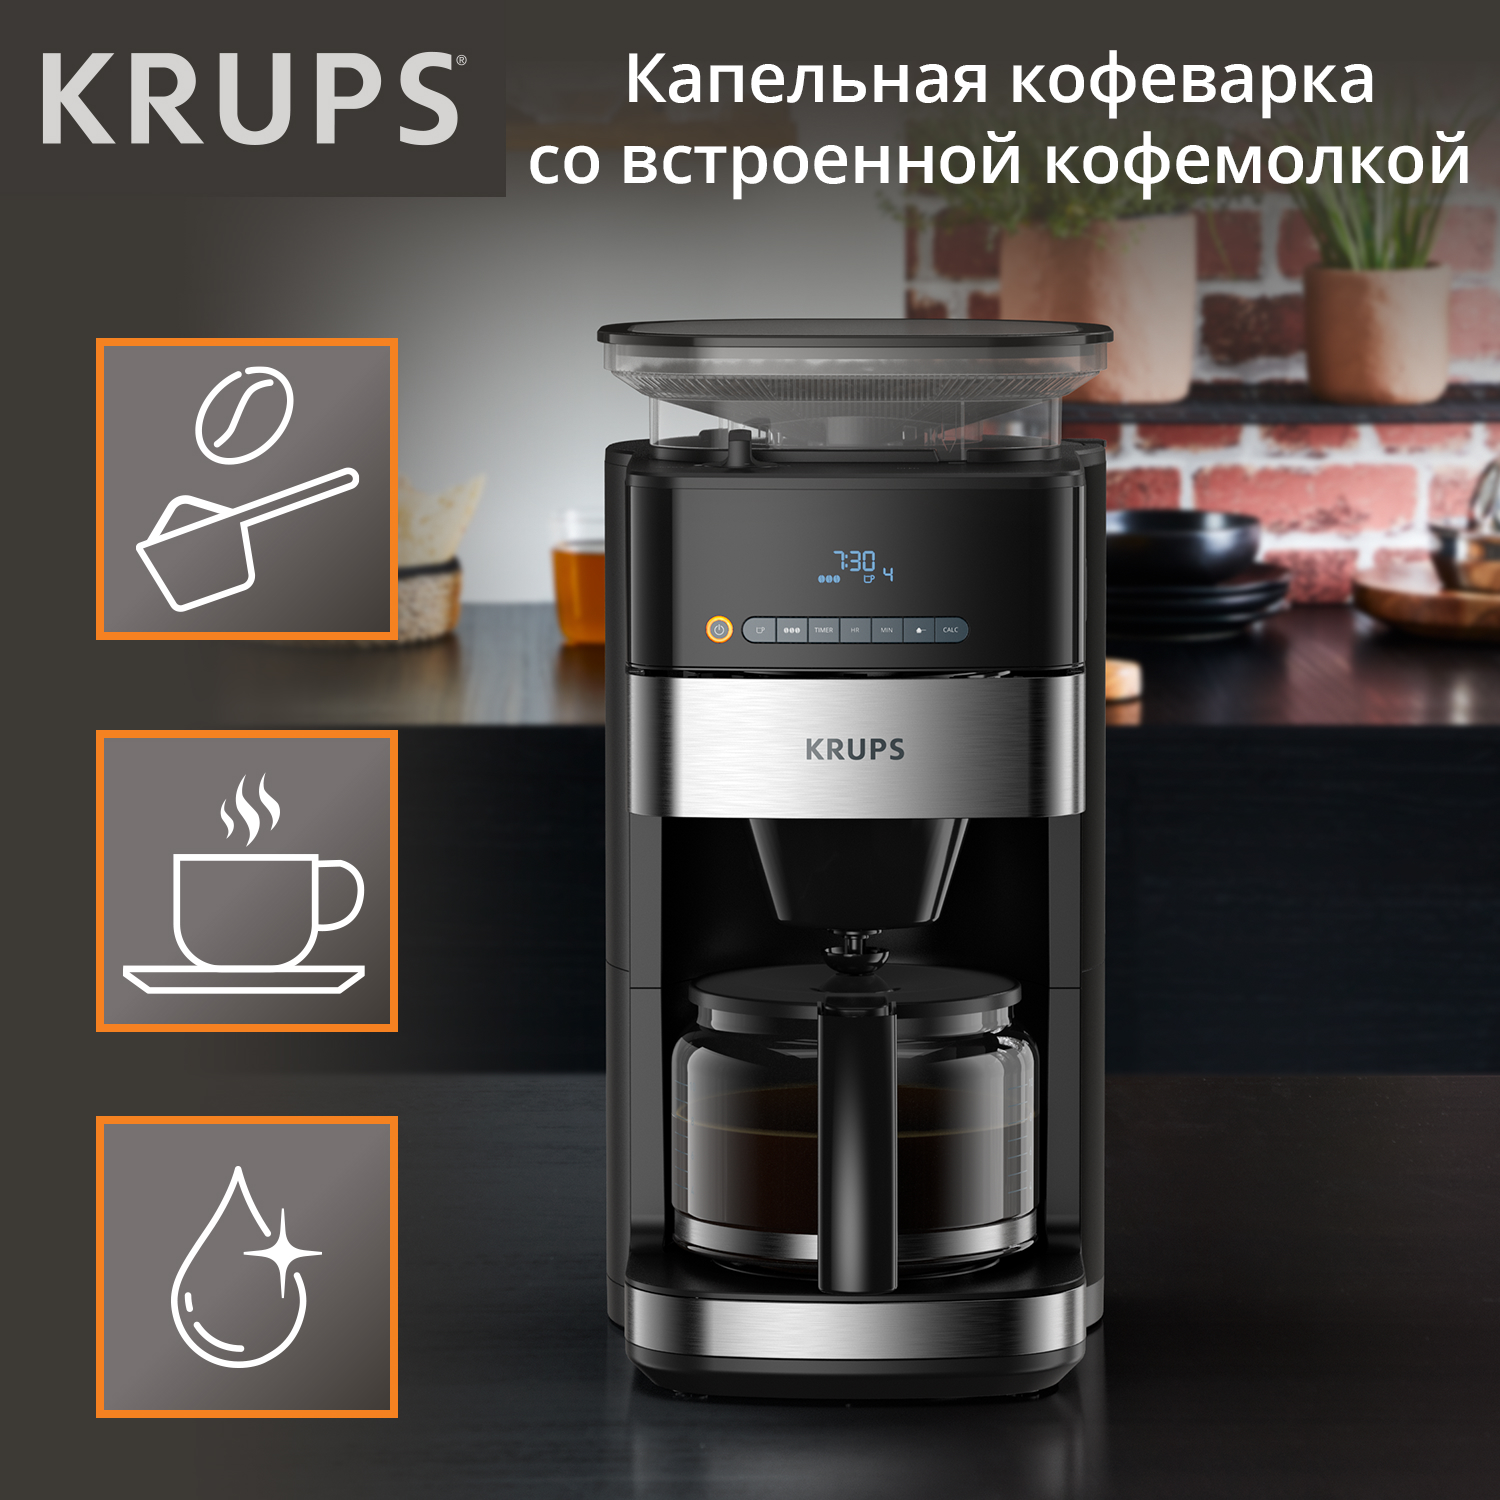 Кофеварка капельного типа Krups Grind Aroma KM832810 с кофемолкой, черный/серебристый электромясорубка garlyn grind pro 500 вт серебристый